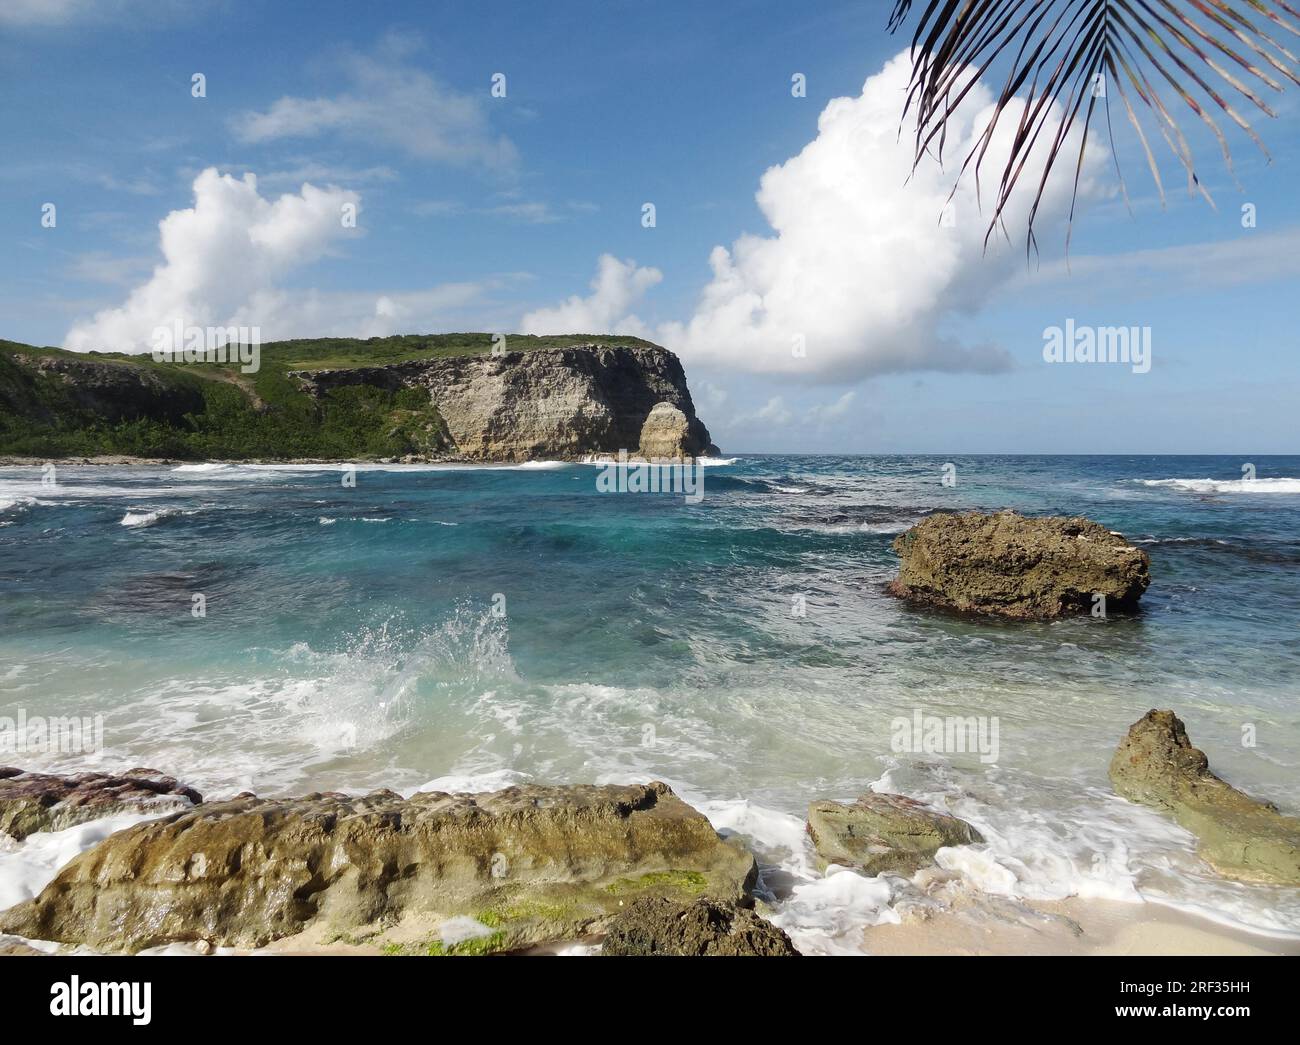 Idílico paisaje costero en una isla del Caribe llamada Guadalupe Foto de stock